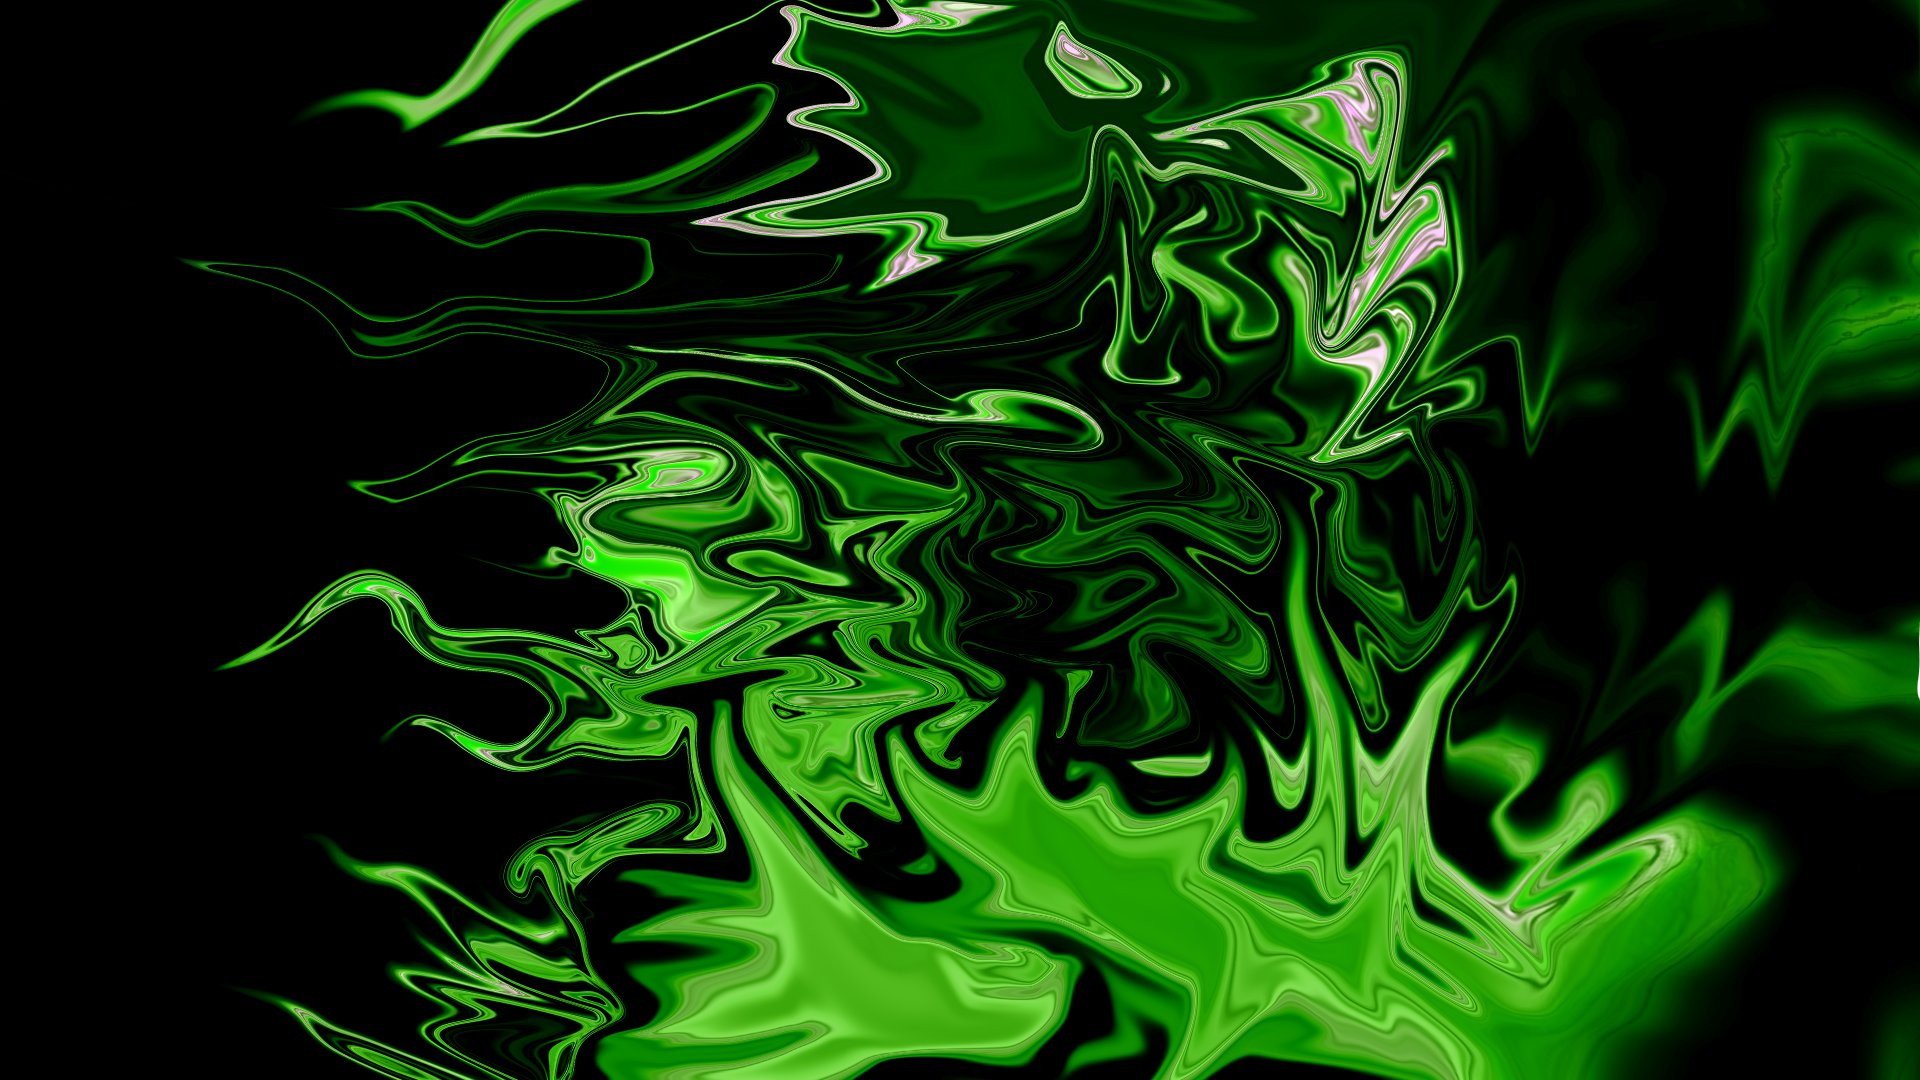 Free Download Green Neon Wallpapers | PixelsTalk.Net